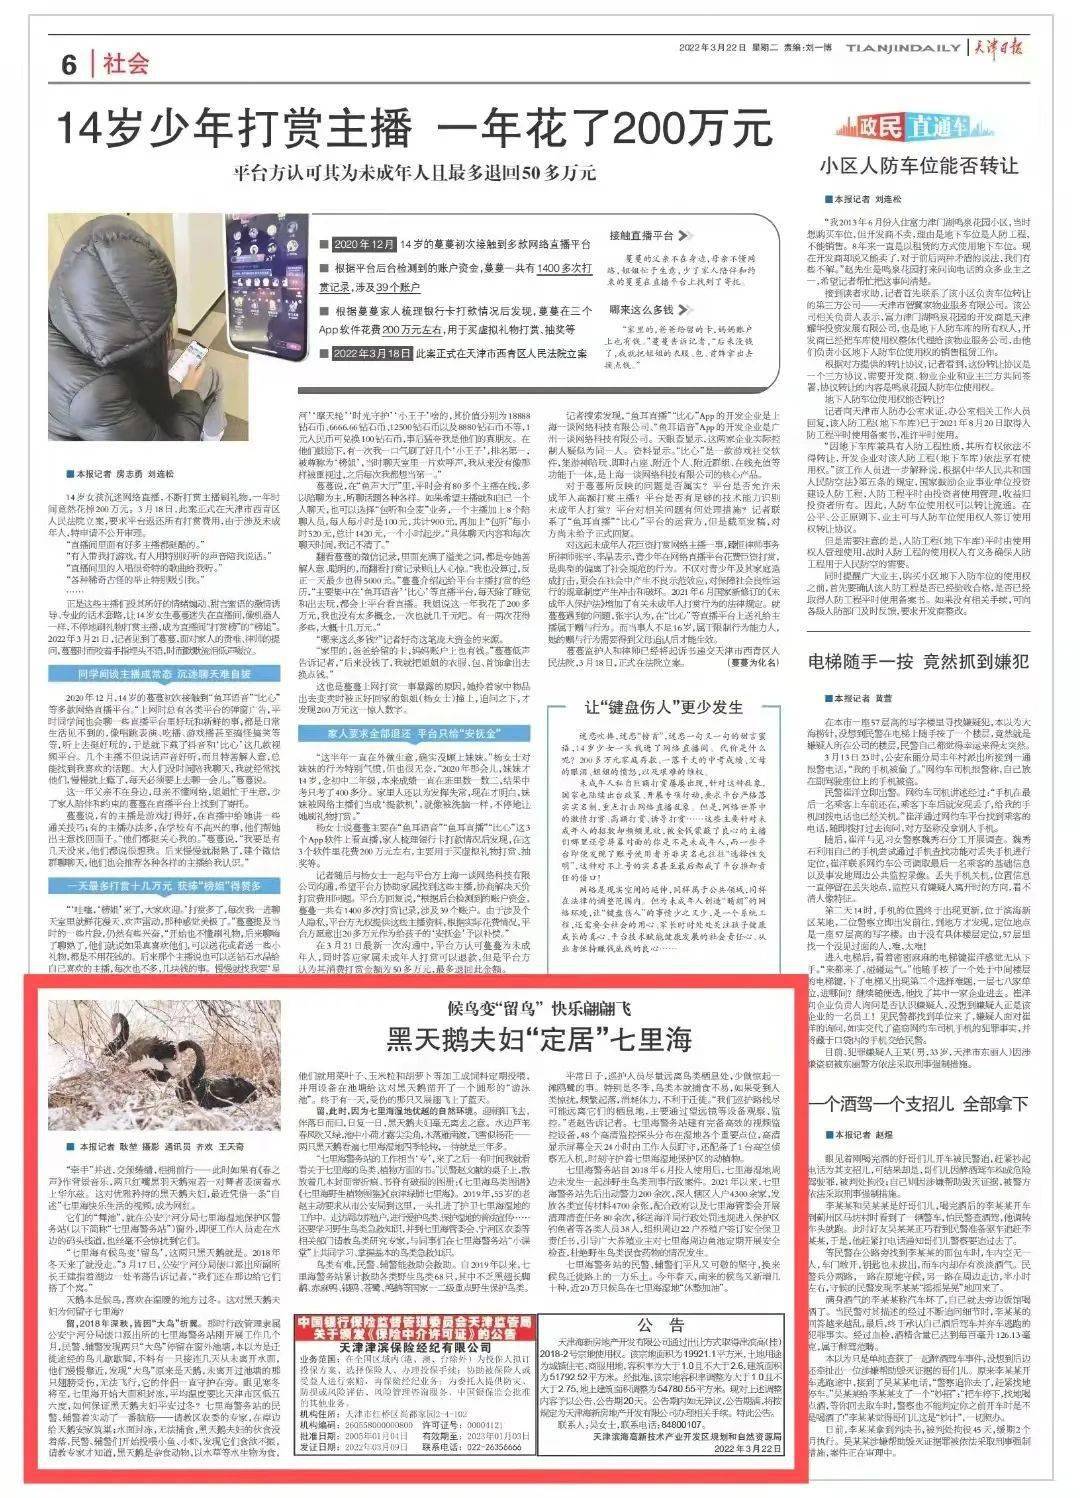 里海|天津日报丨黑天鹅夫妇“定居”七里海